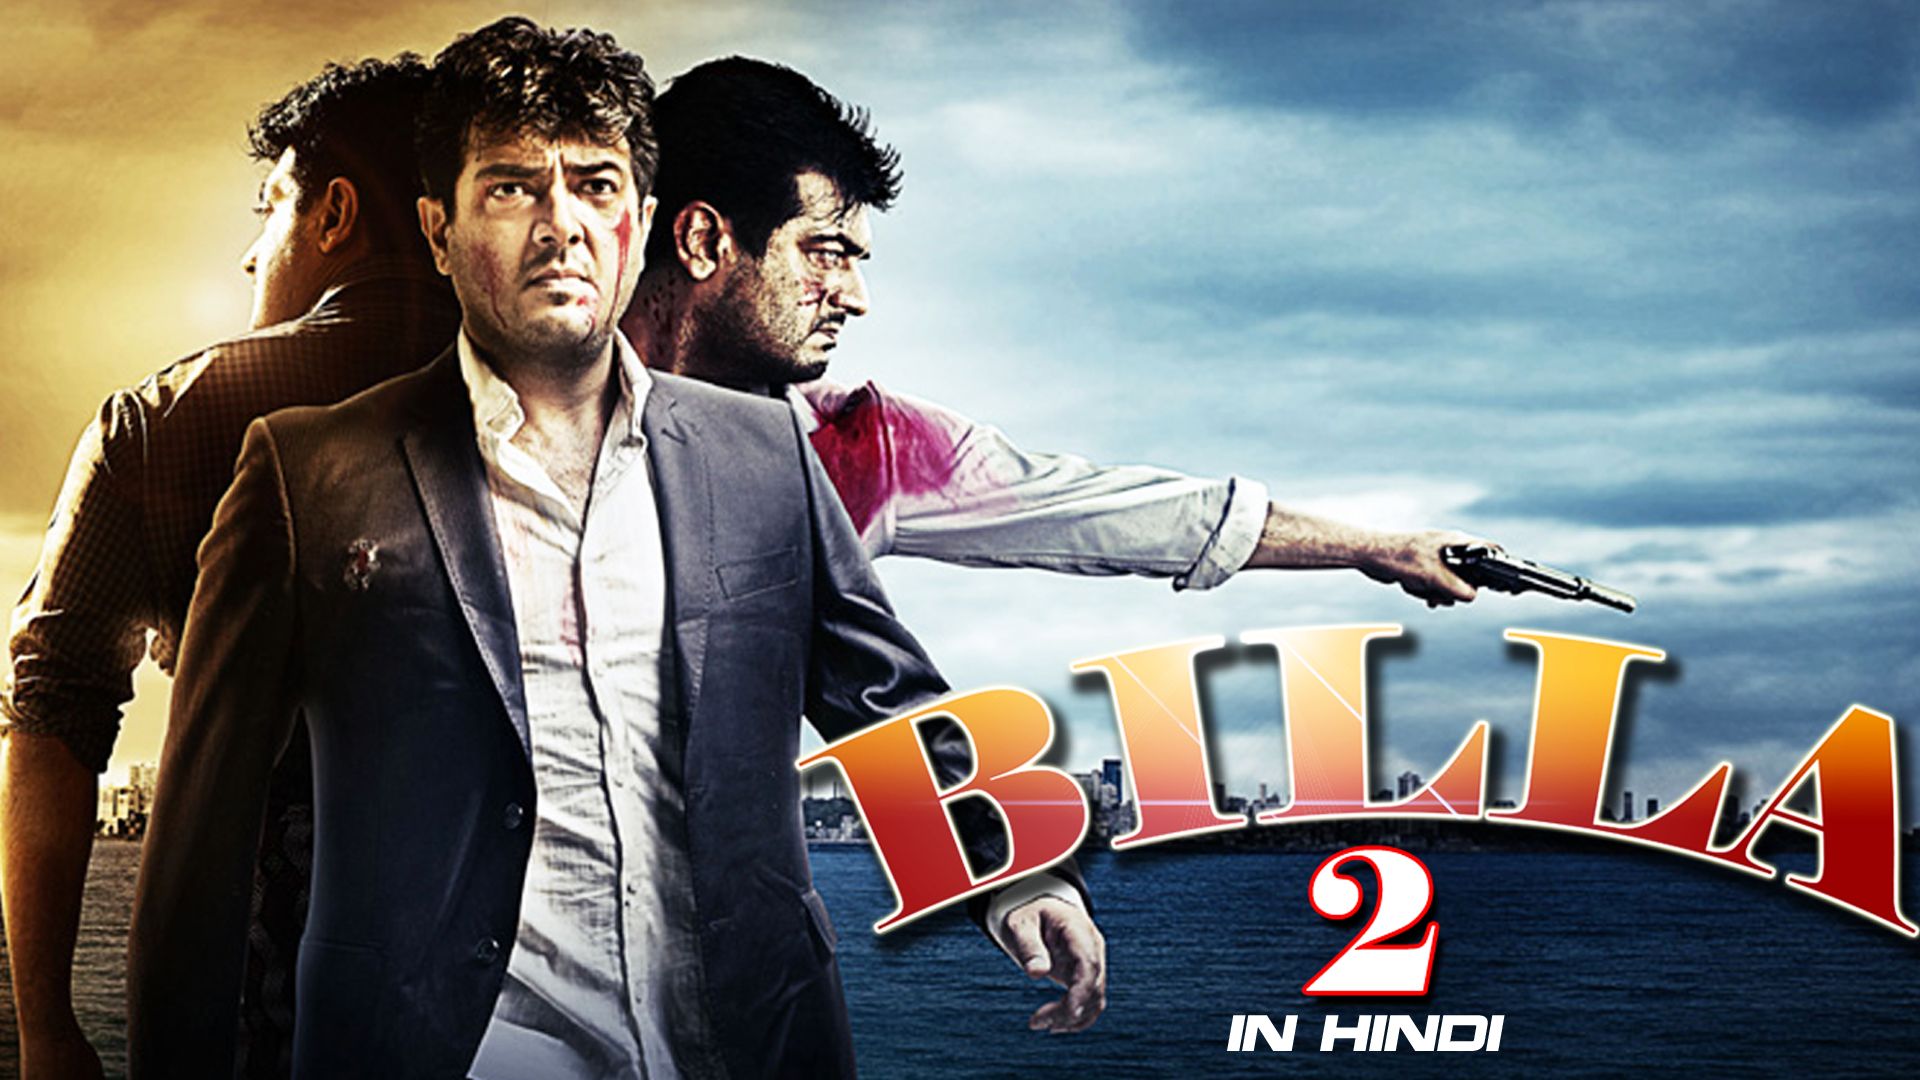 Watch Billa 2 (in Hindi)